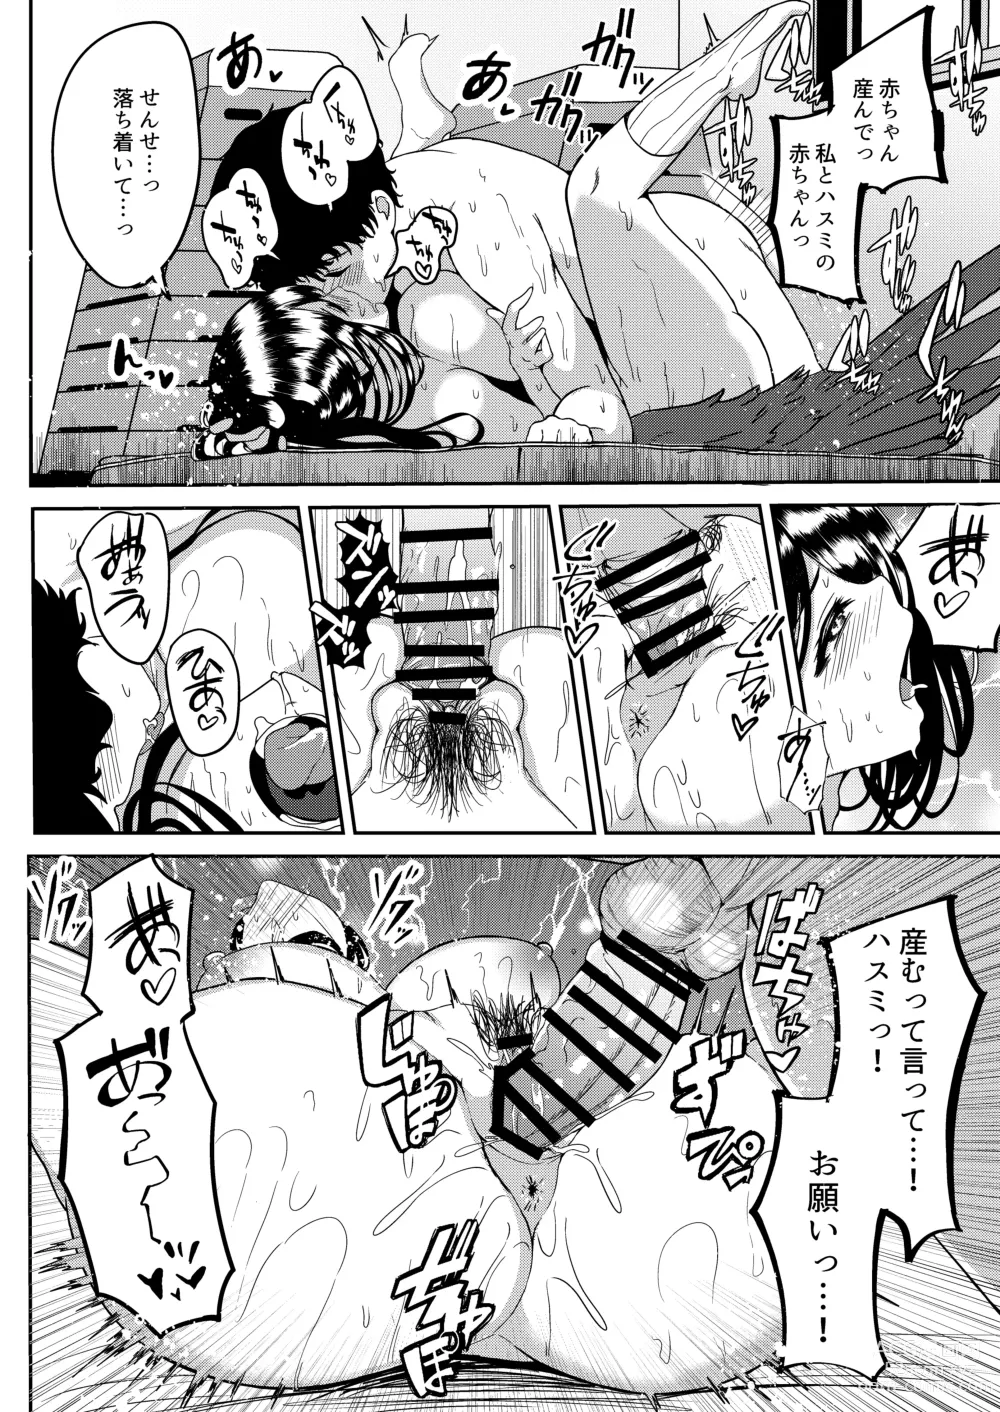 Page 23 of doujinshi Hasumi to Naisho no Taiikusai